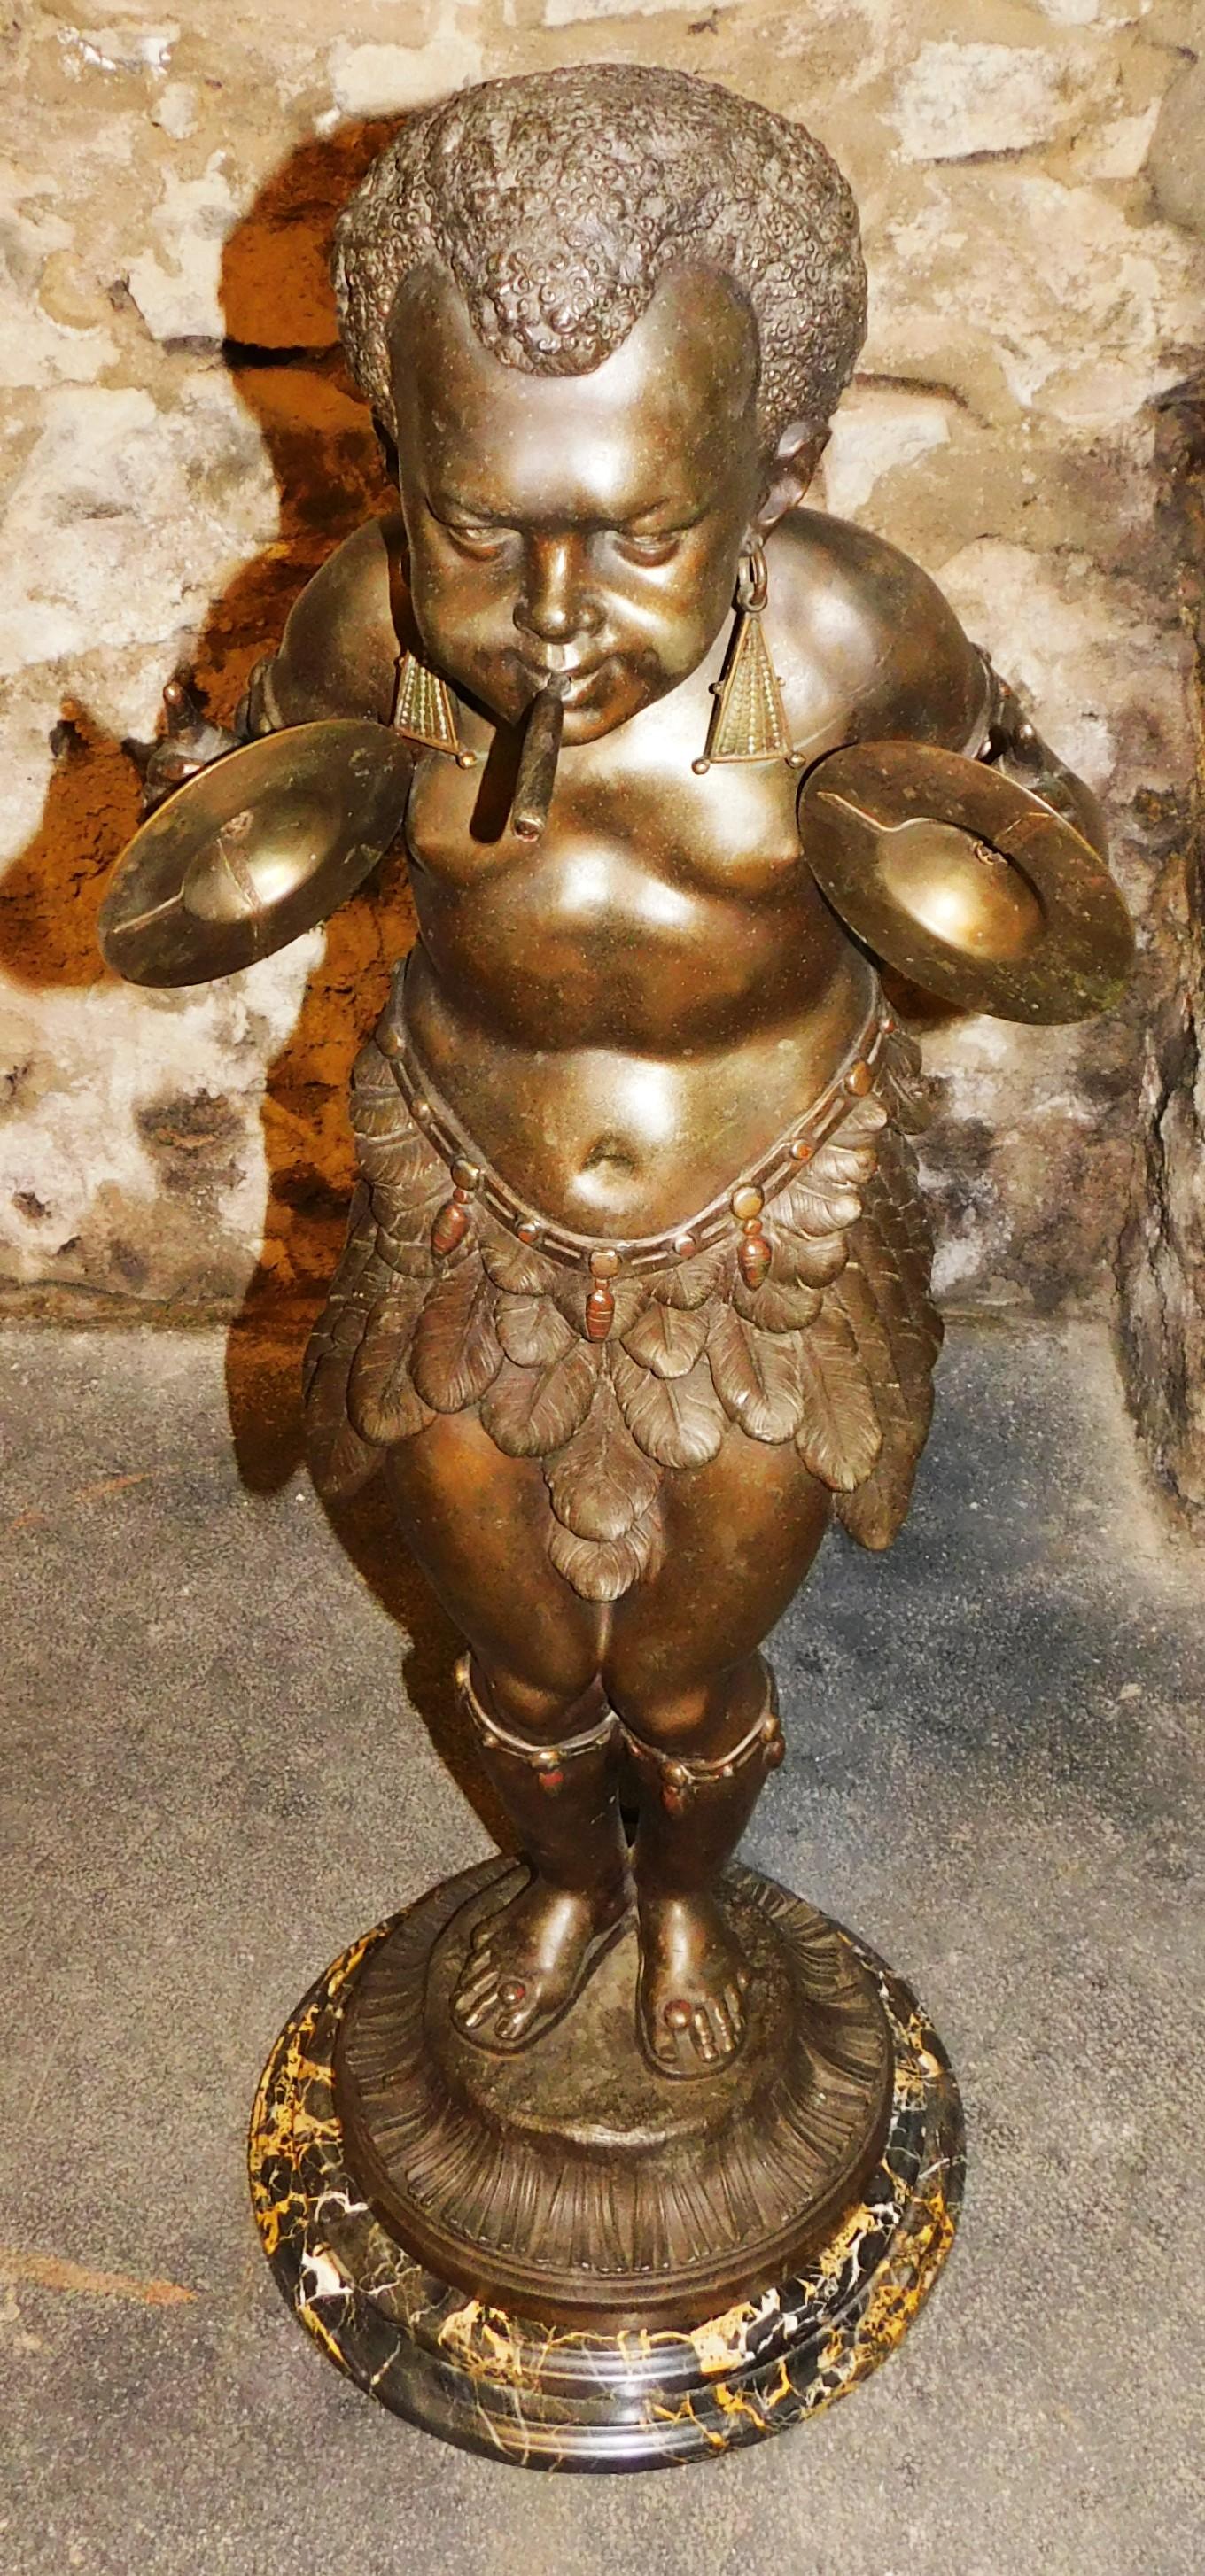 Fabriqué à Paris France, Pygmée africain en bronze antique du 19ème siècle jouant des cymbales avec un cigare à la bouche. Le cigare peut être allumé au gaz, le raccord de la valve à gaz à l'arrière est en état de marche, il s'allume et s'éteint. La